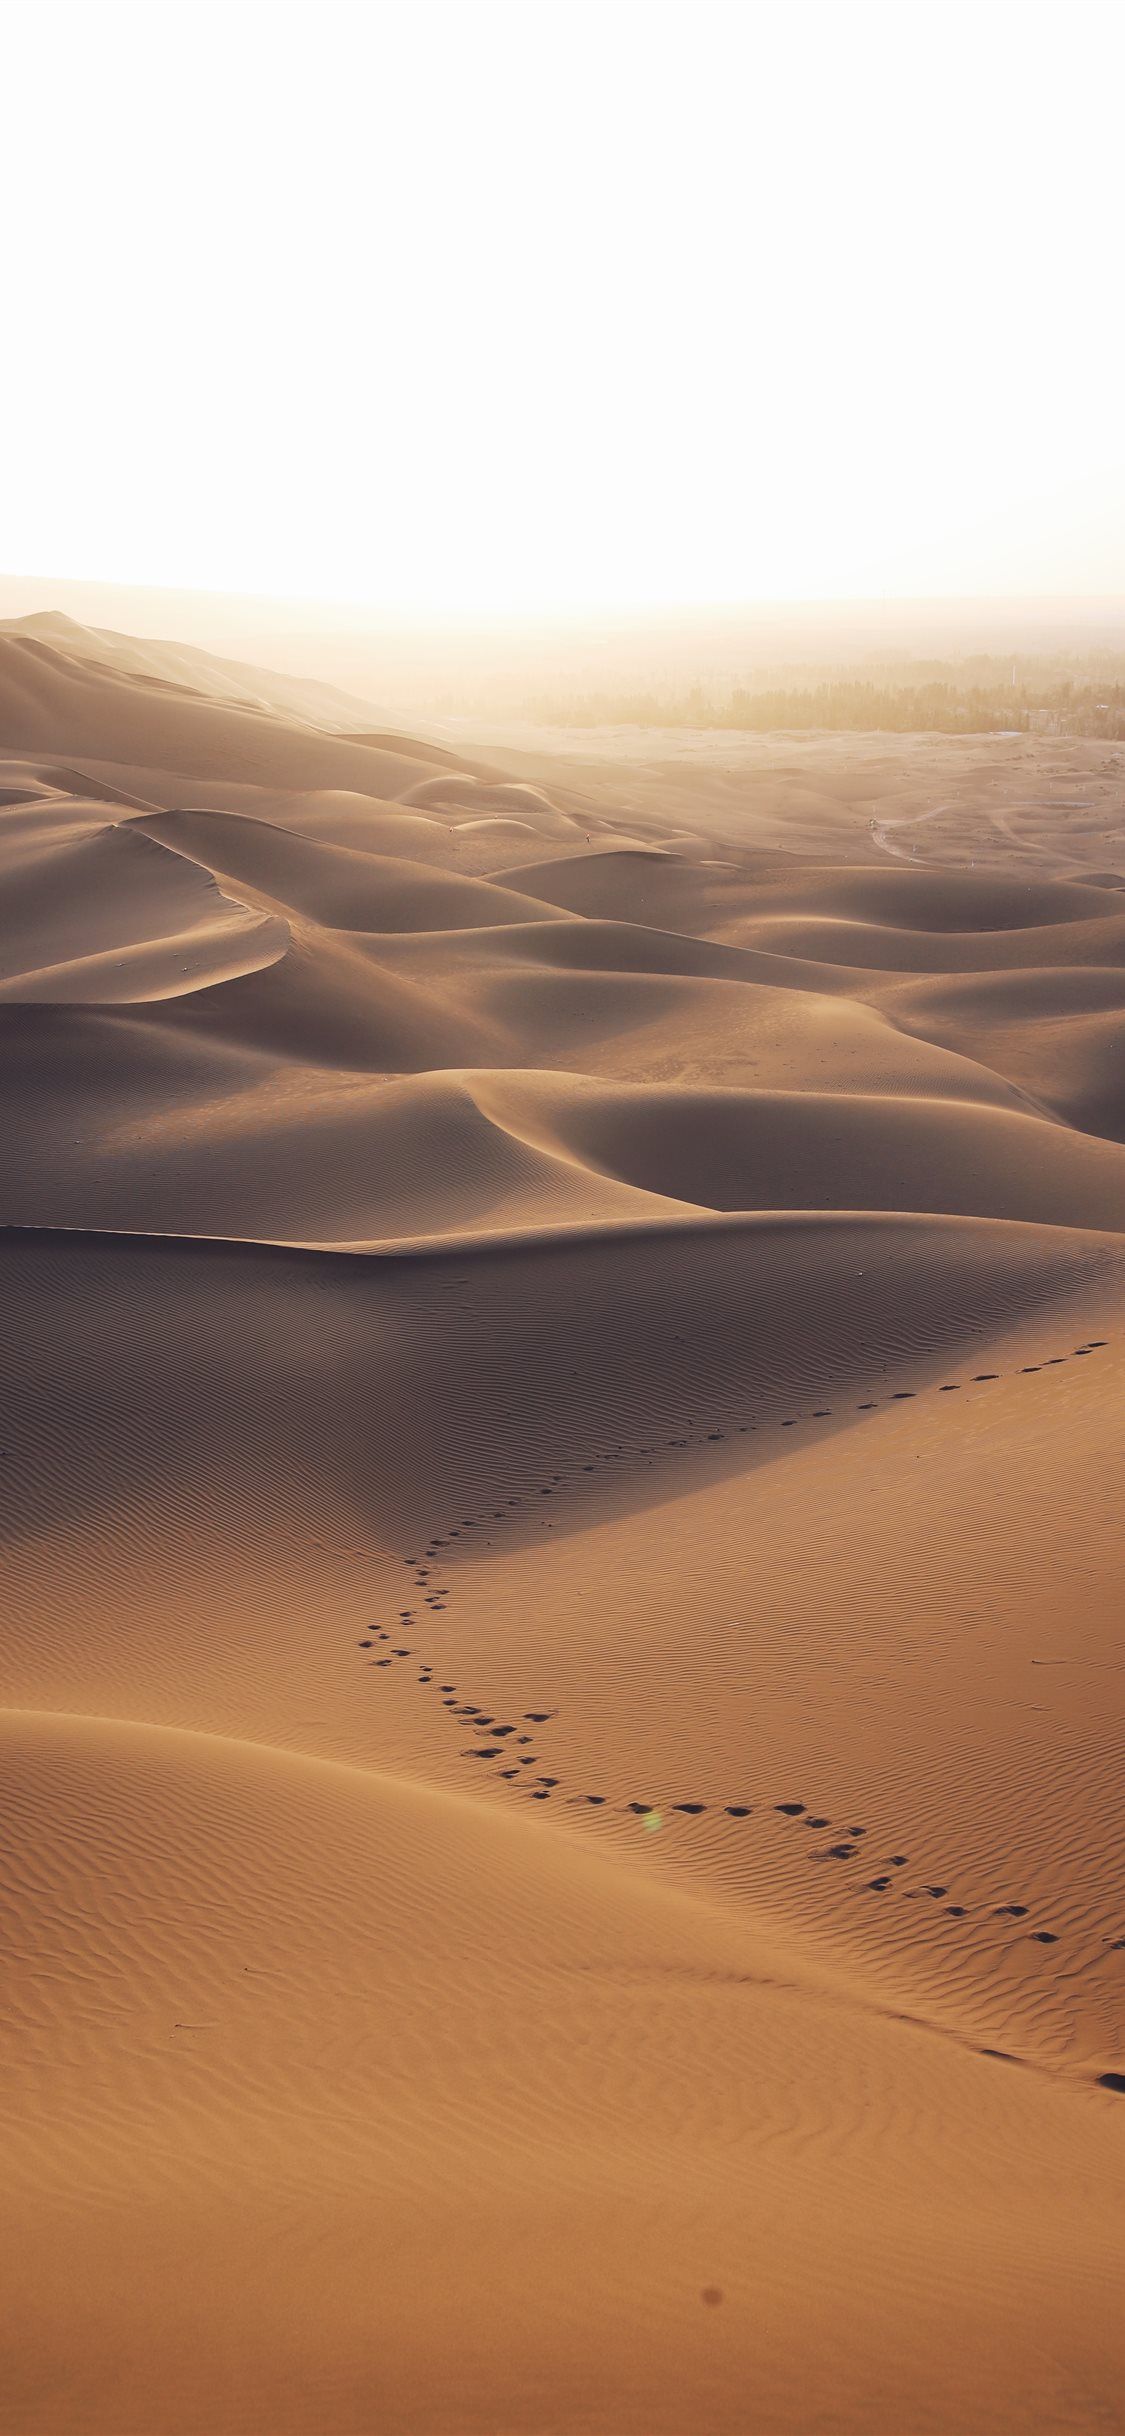 Aerial photo of brown desert - Desert